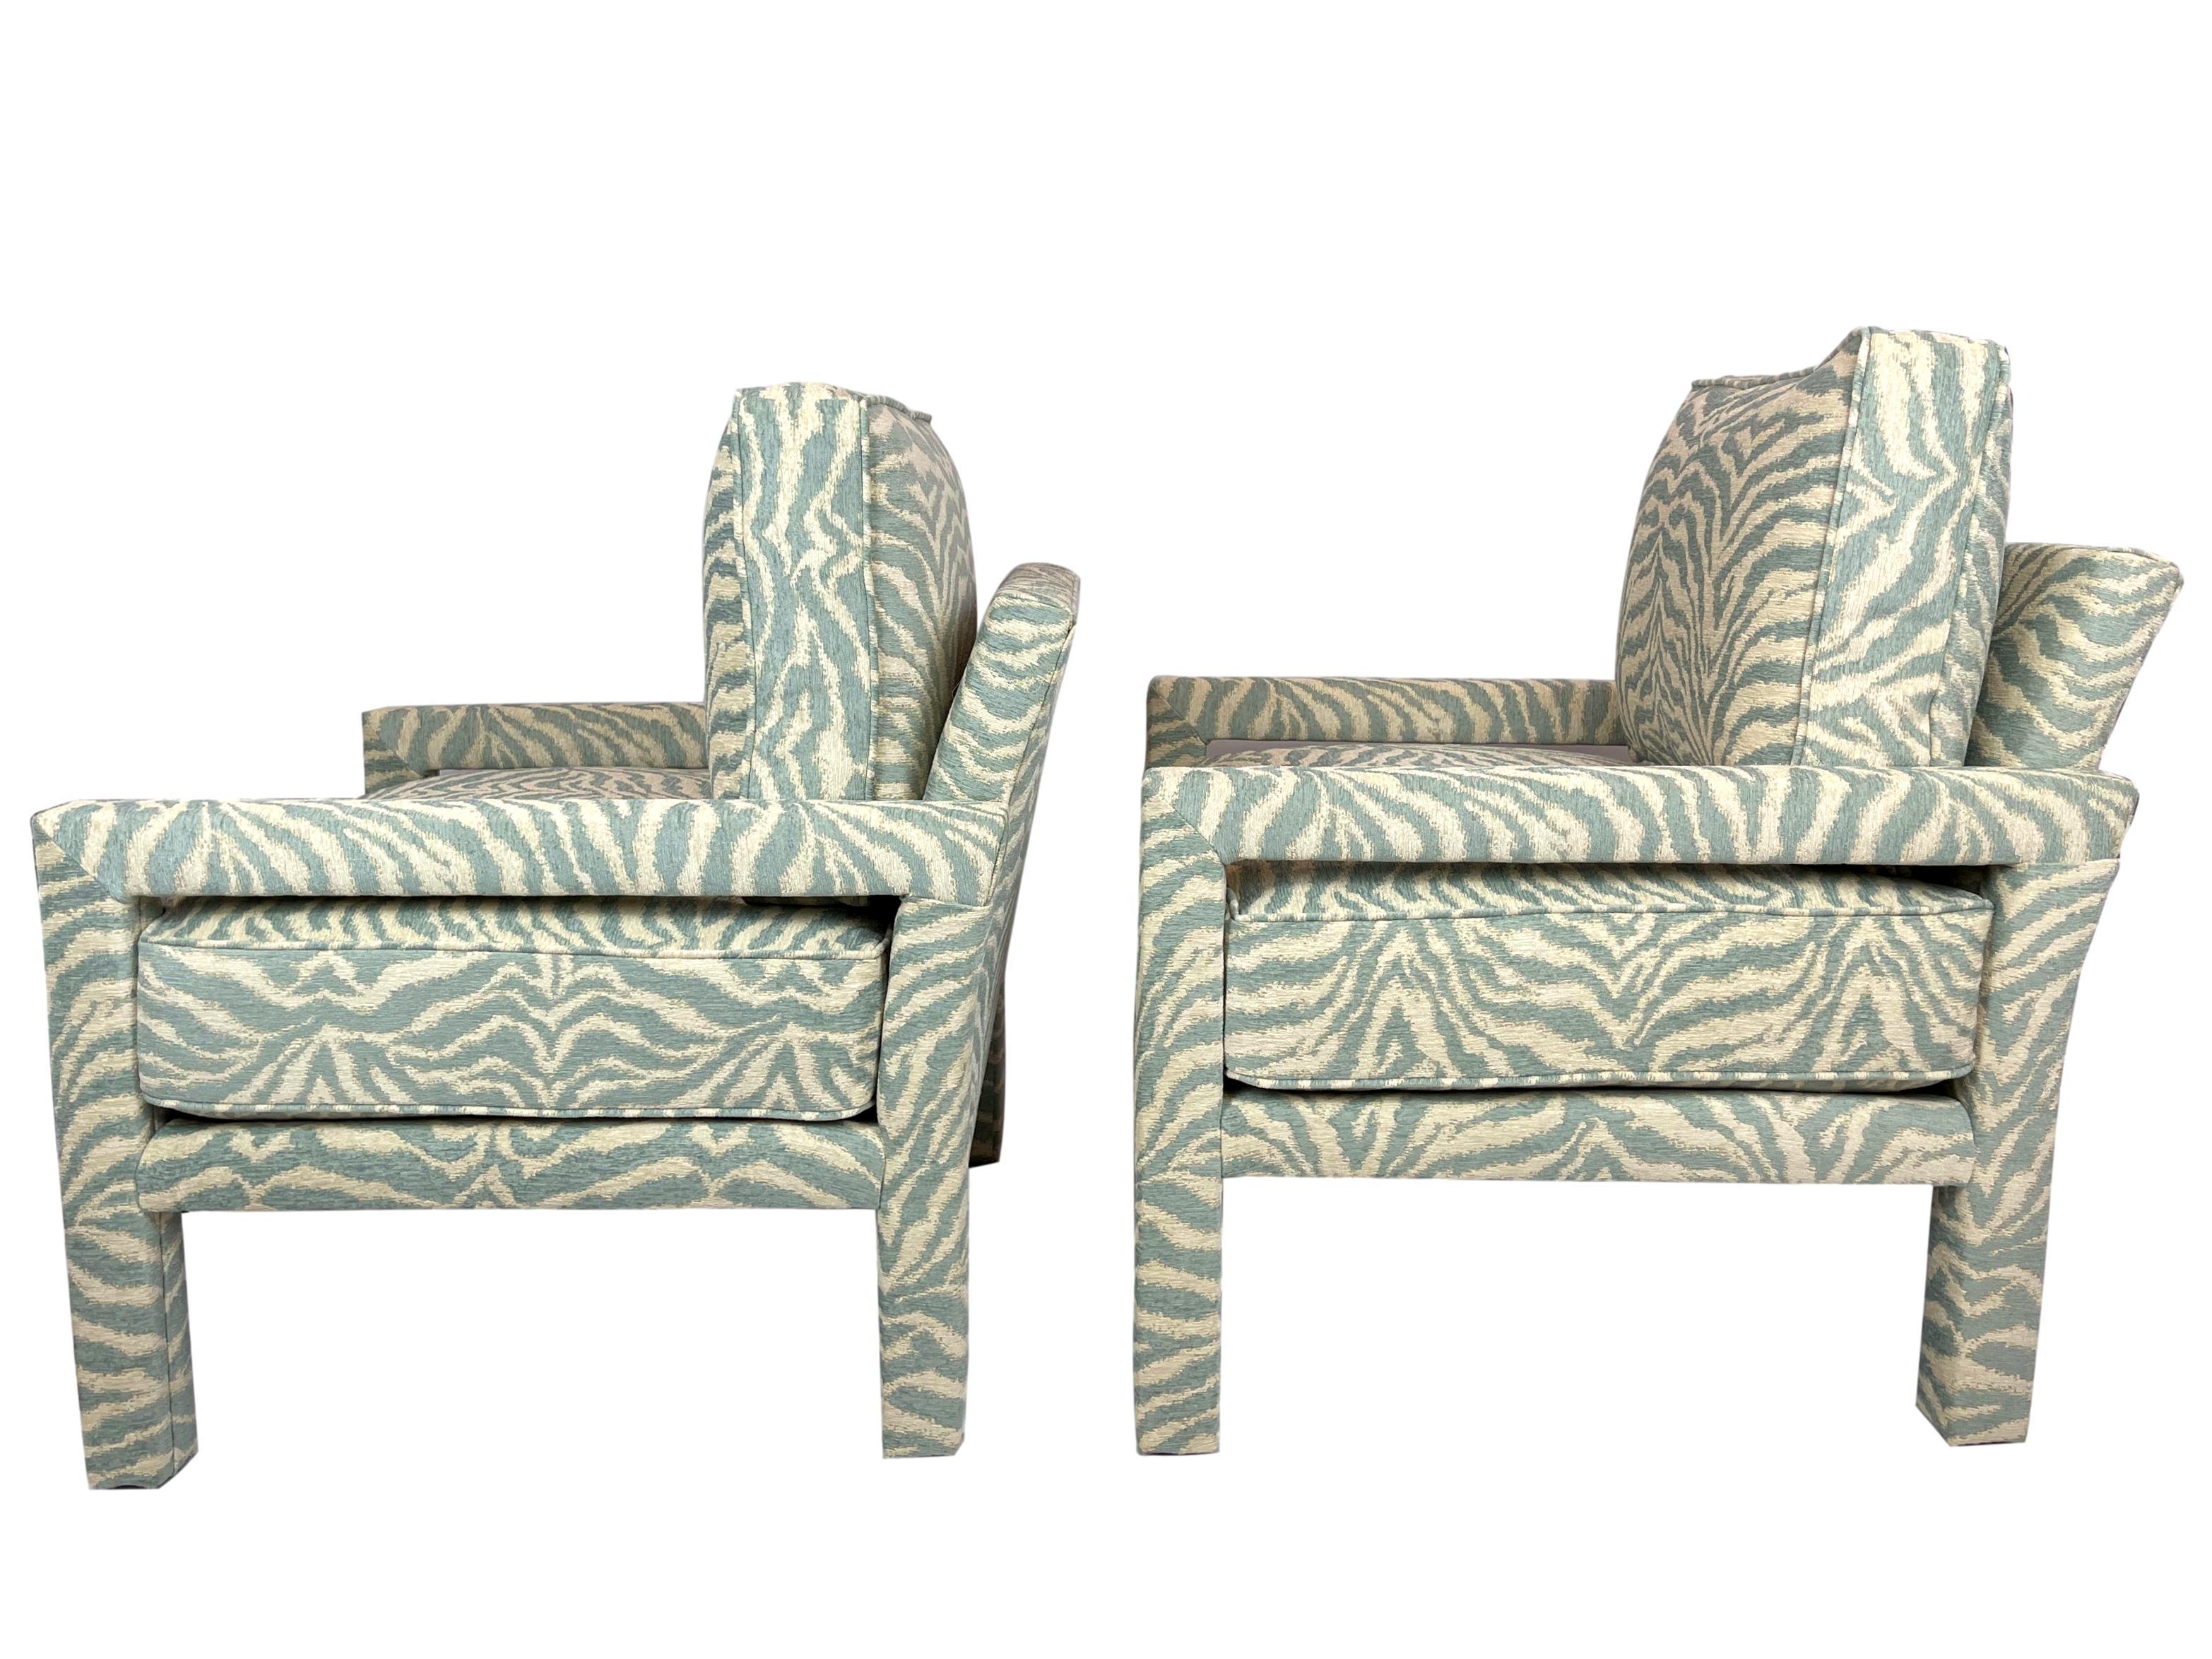 Paire de chaises parsons neuves de style Milo Baughman, tapissées d'un tissu zébré haut de gamme.
Nos chaises sont fabriquées à la main et rembourrées à partir de matériaux et de tissus neufs par les meilleurs artisans de Morganton, en Caroline du